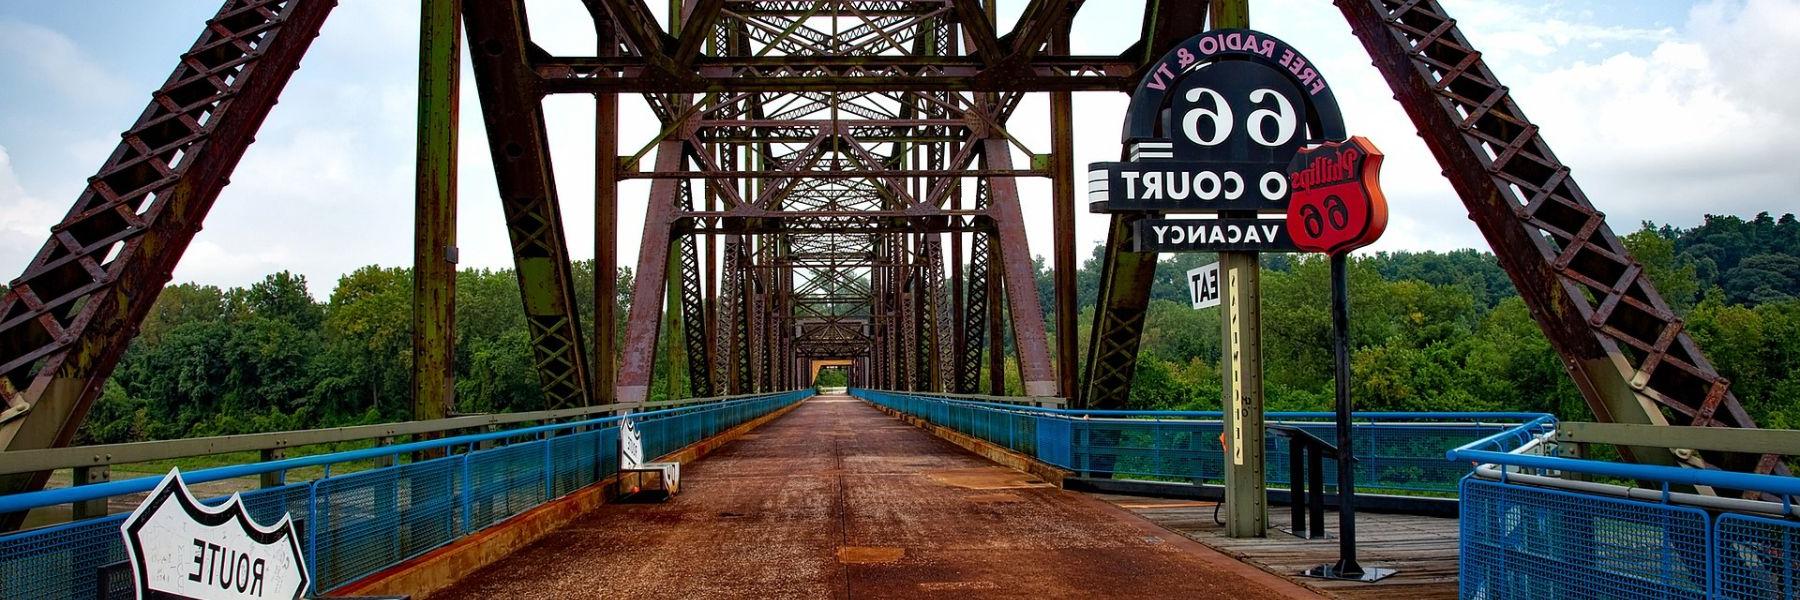 老岩链桥是66号公路上最初的密西西比河交叉点.